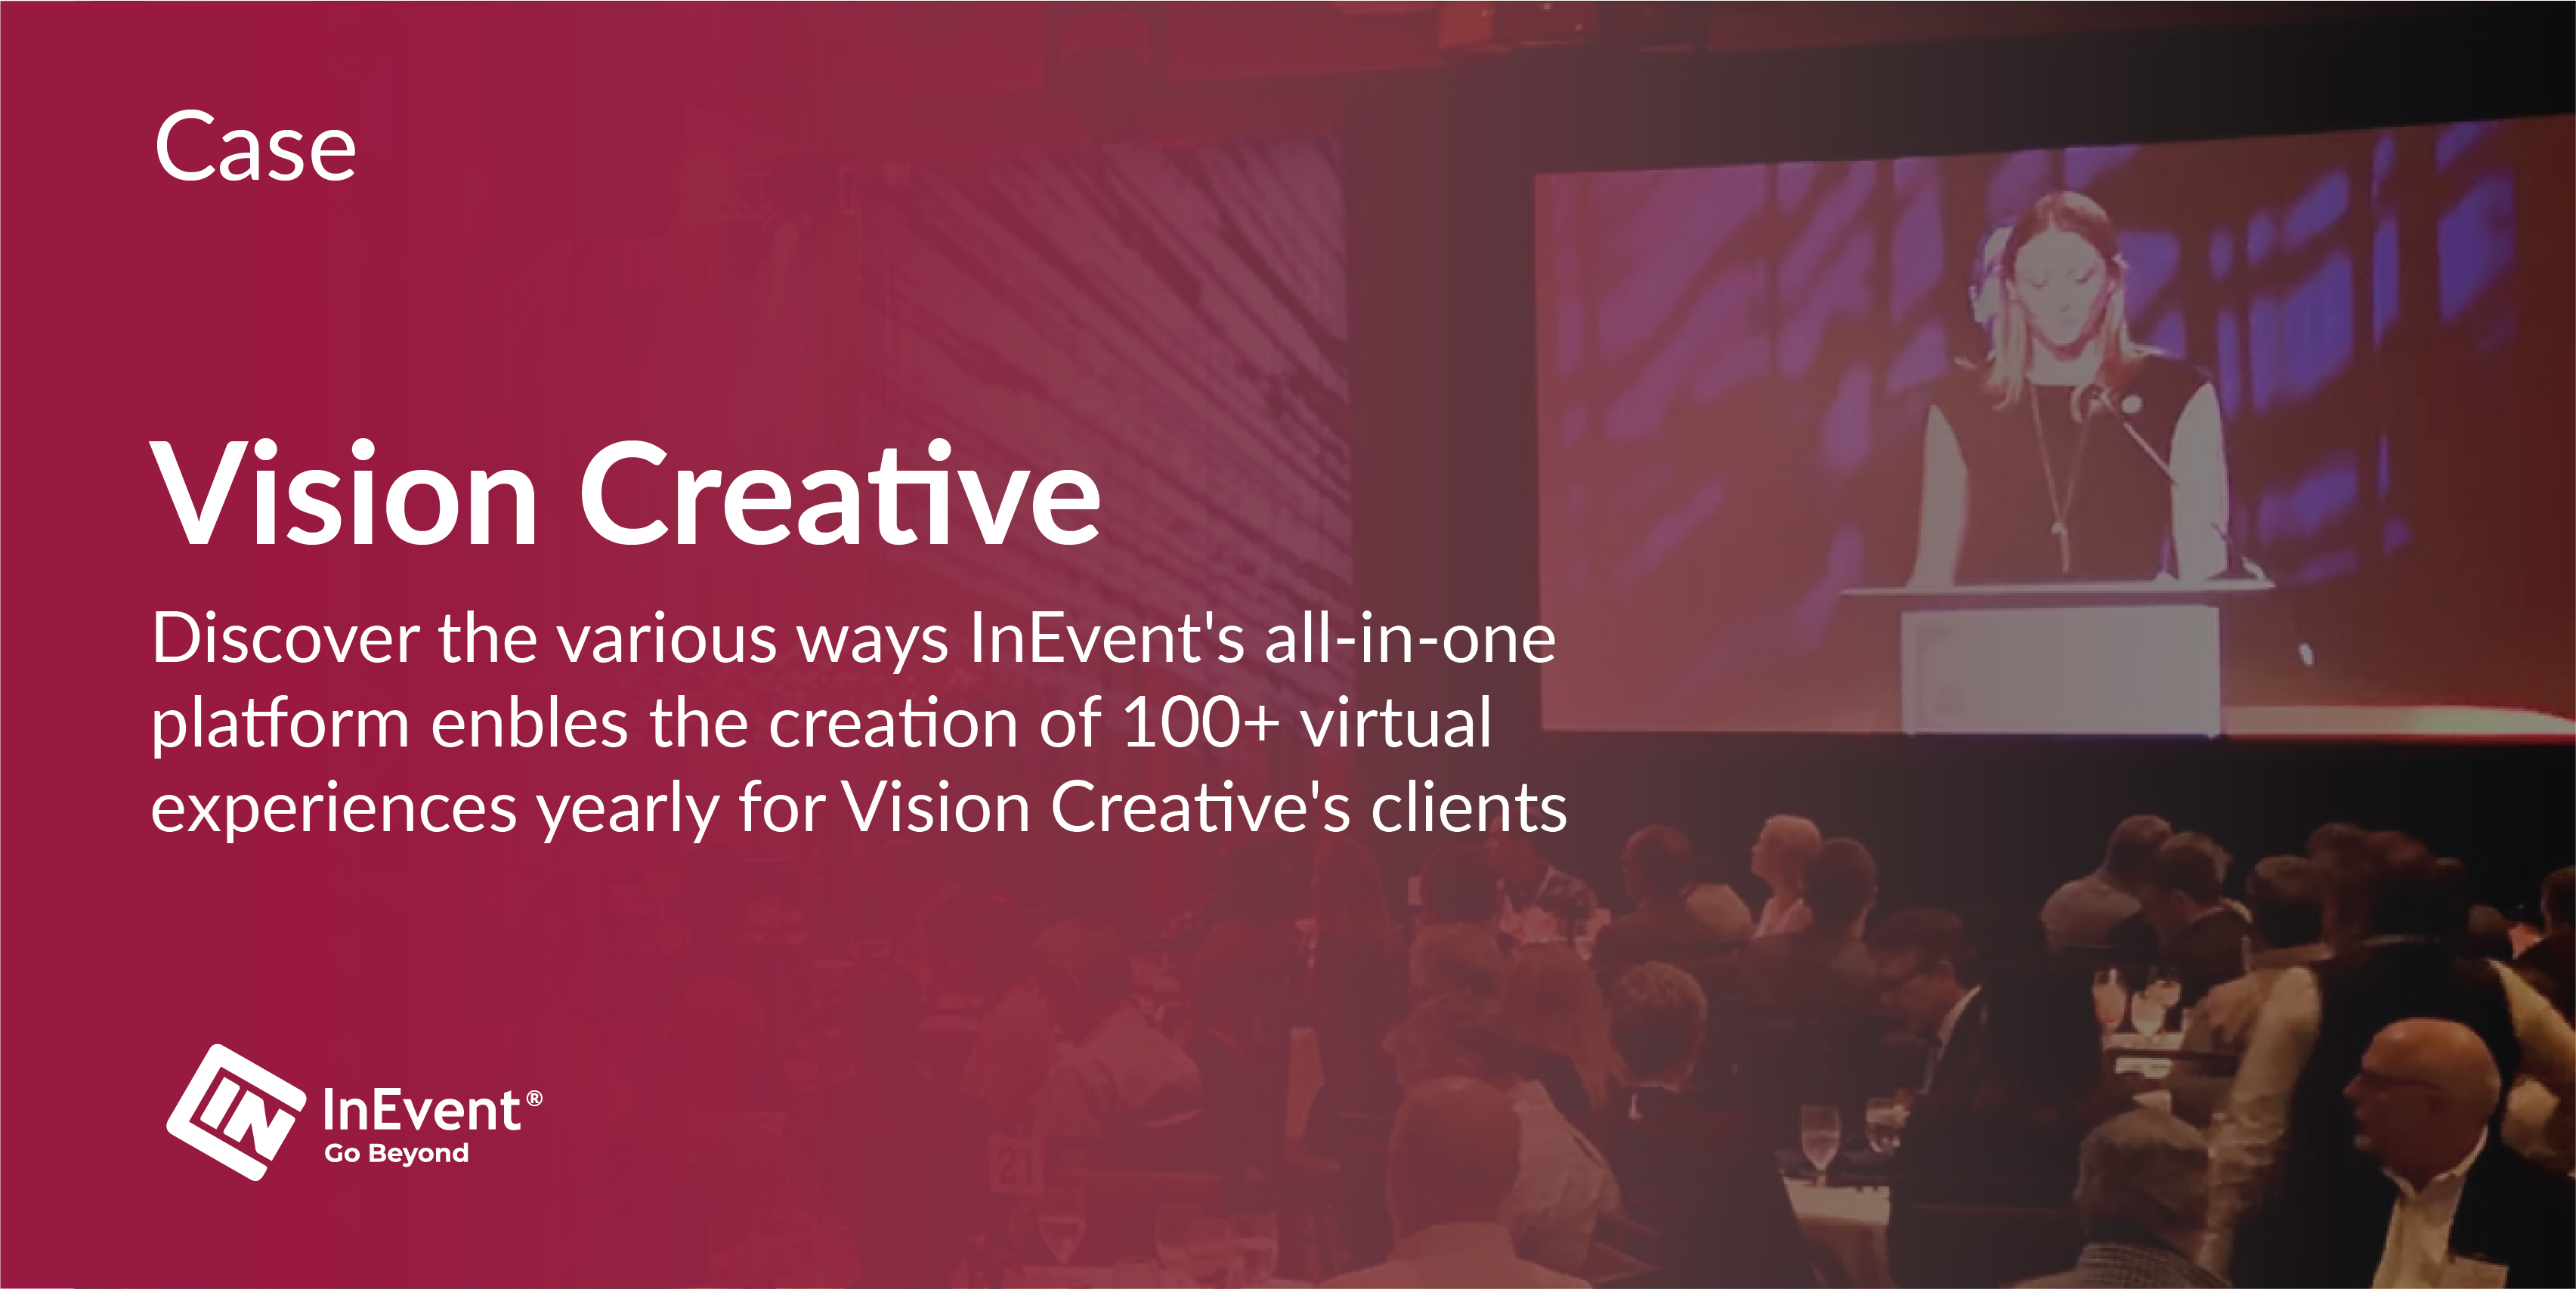 Les événements récurrents réussis de Vision Creative